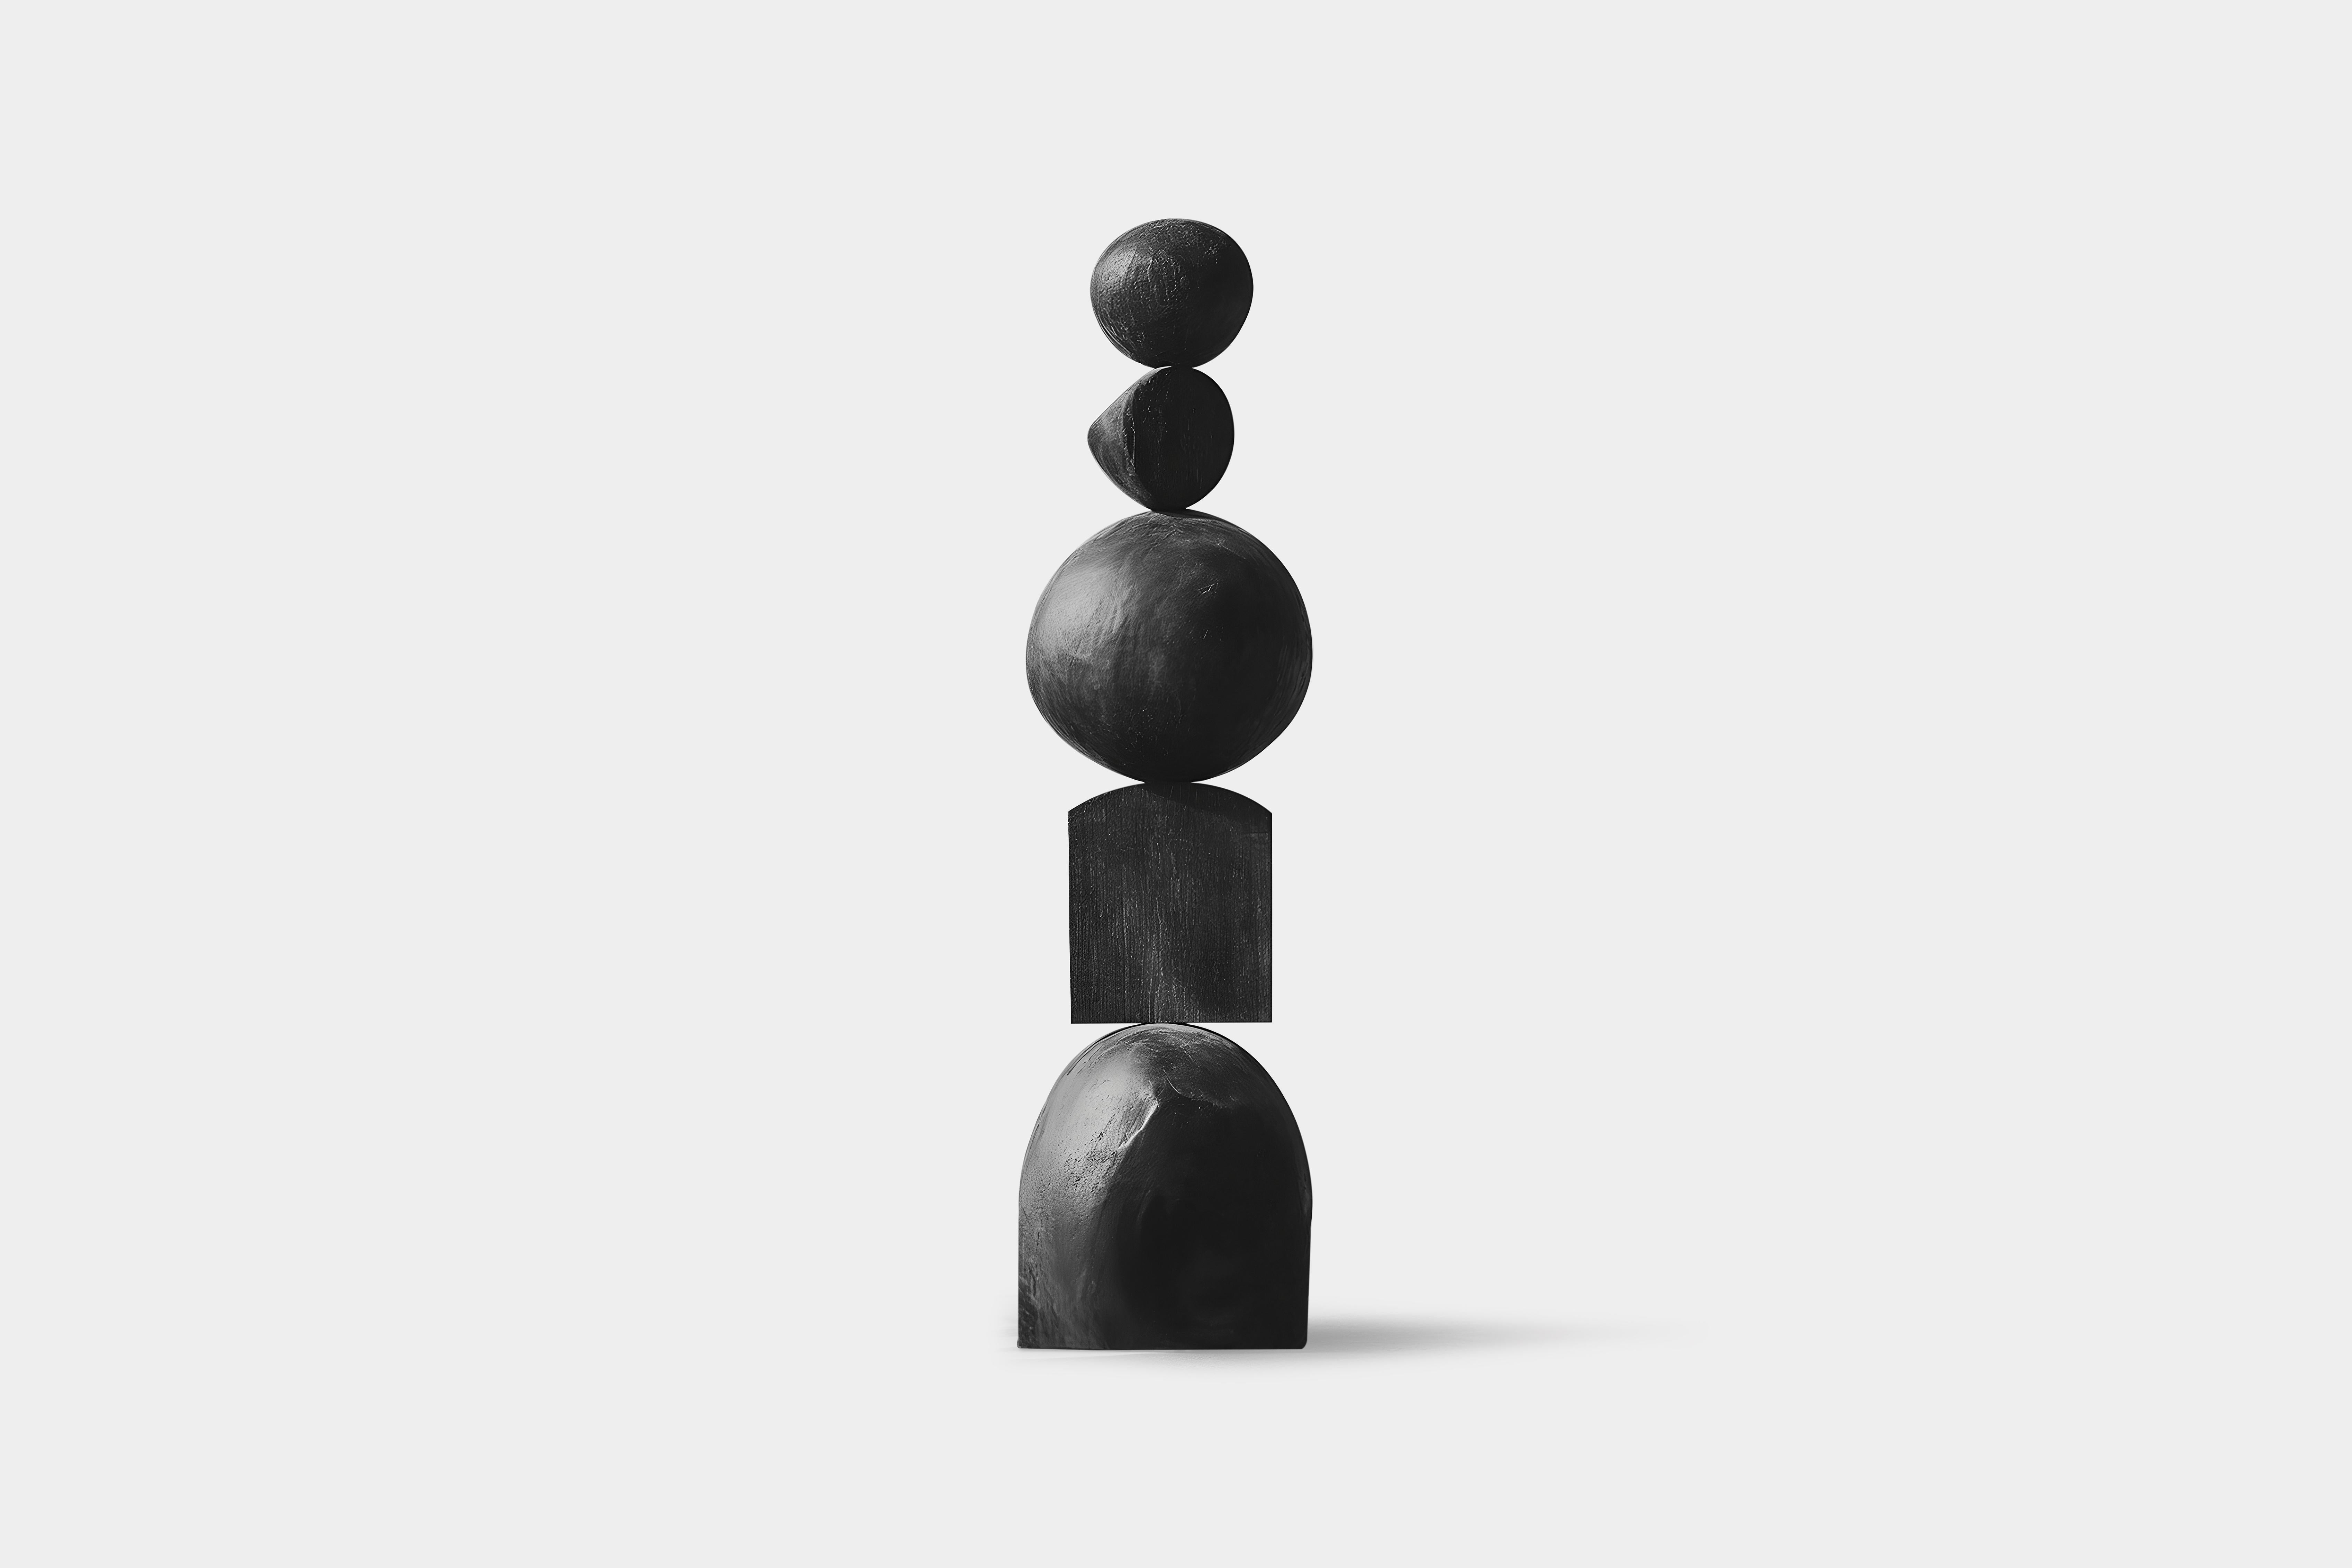 Geschnitzte Eleganz, schwarzer Massivholz-Ständer No80 von NONO
--


Die stehenden Holzskulpturen von Joel Escalona sind Objekte von rauer Schönheit und heiterer Anmut. Jedes einzelne ist ein Zeugnis für die Kraft des Materials, mit sanften Kurven,